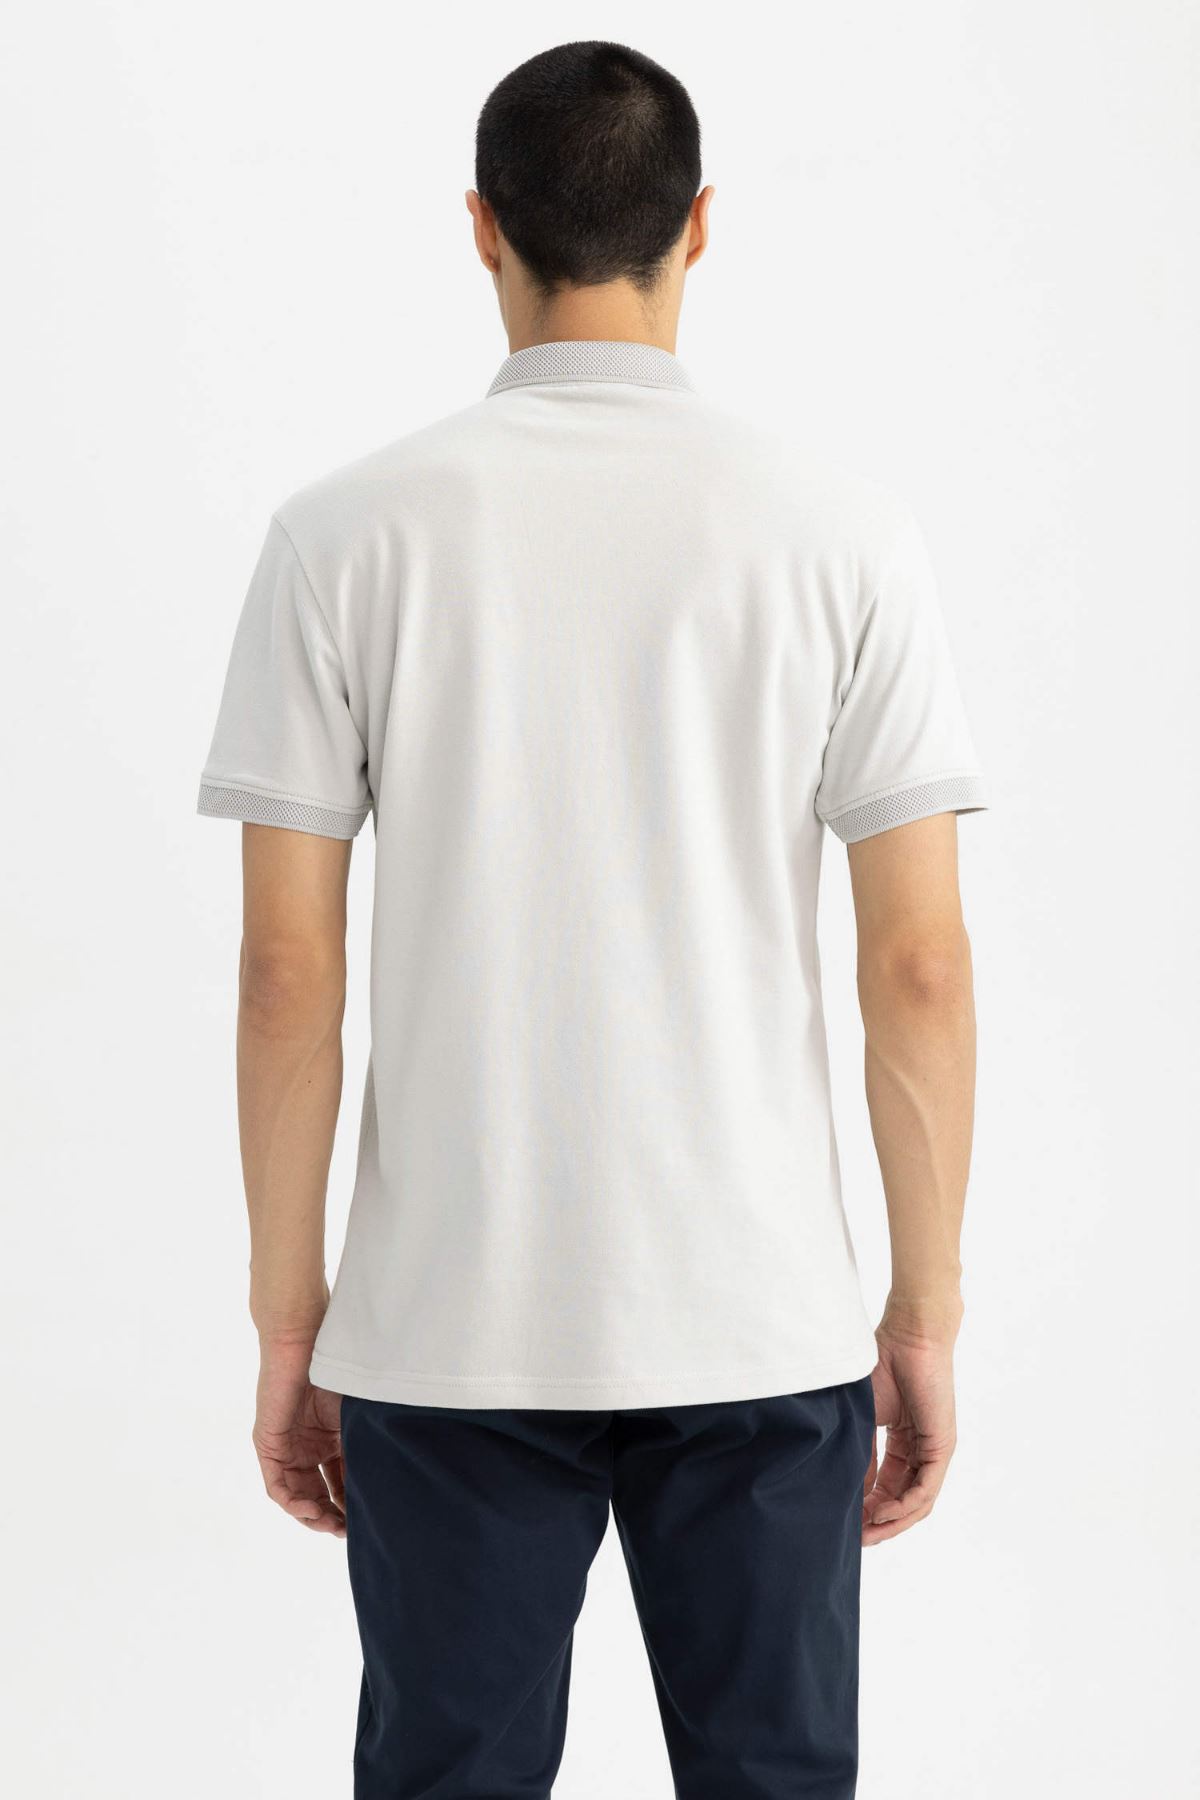 Defacto Erkek Beyaz Tişört - T5259AZ/GR469